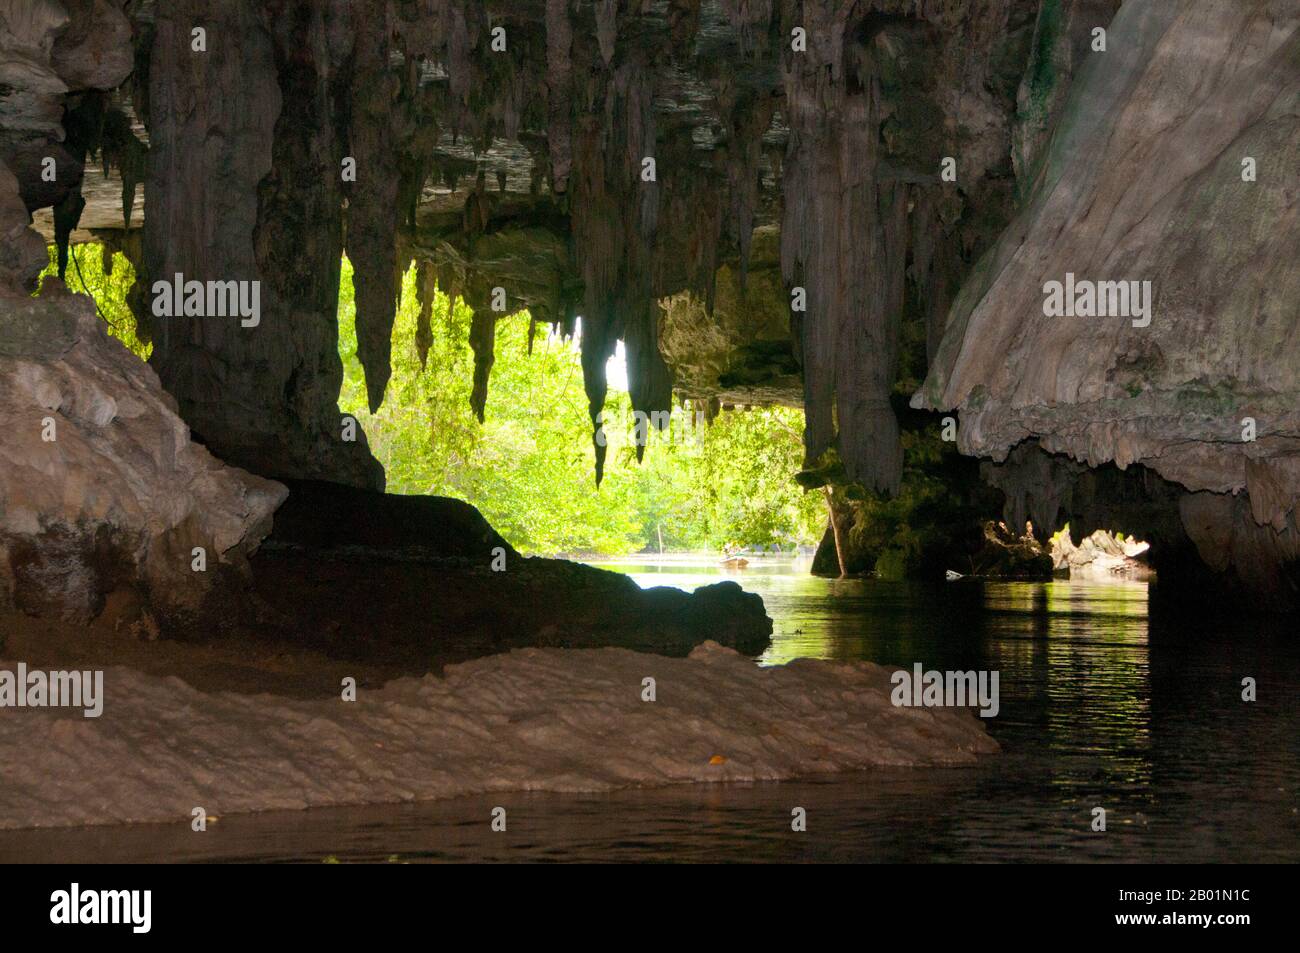 Thailandia: Kayak attraverso la grotta di Tham Lot, oltre al parco nazionale di Bokkharani, provincia di Krabi. Il Parco Nazionale di Than Bokkharani si trova nella provincia di Krabi a circa 45 chilometri (28 miglia) a nord-ovest della città di Krabi. Il parco copre un'area di 121 chilometri quadrati (47 miglia quadrate) ed è caratterizzato da una serie di affioramenti calcarei, foreste pluviali sempreverdi, foreste di mangrovie, paludi torbiere e molte isole. Ci sono anche numerose grotte e complessi rupestri con alcune spettacolari stalagmiti e stalattiti. Il Bokkharani è incentrato su due famose grotte, Tham Lot e Tham Phi Hua. Foto Stock